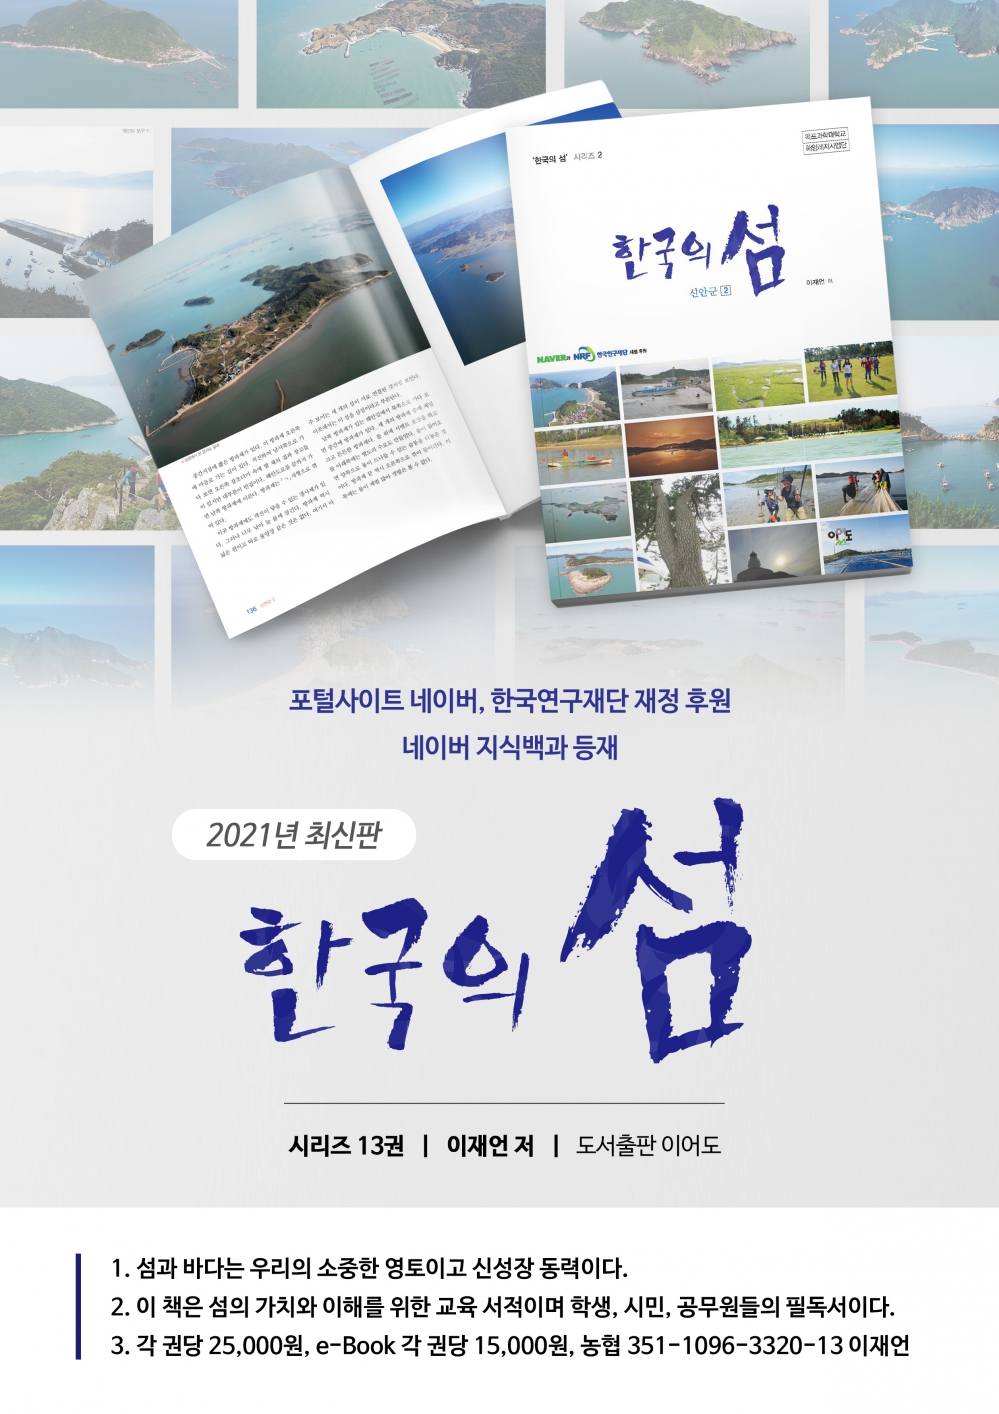 희망도서 - 네이버의 재정 후원으로 집필한 시리즈 13권 2쇄 책 소개 첨부이미지 : '한국의 섬. 홍보지 1.jpg